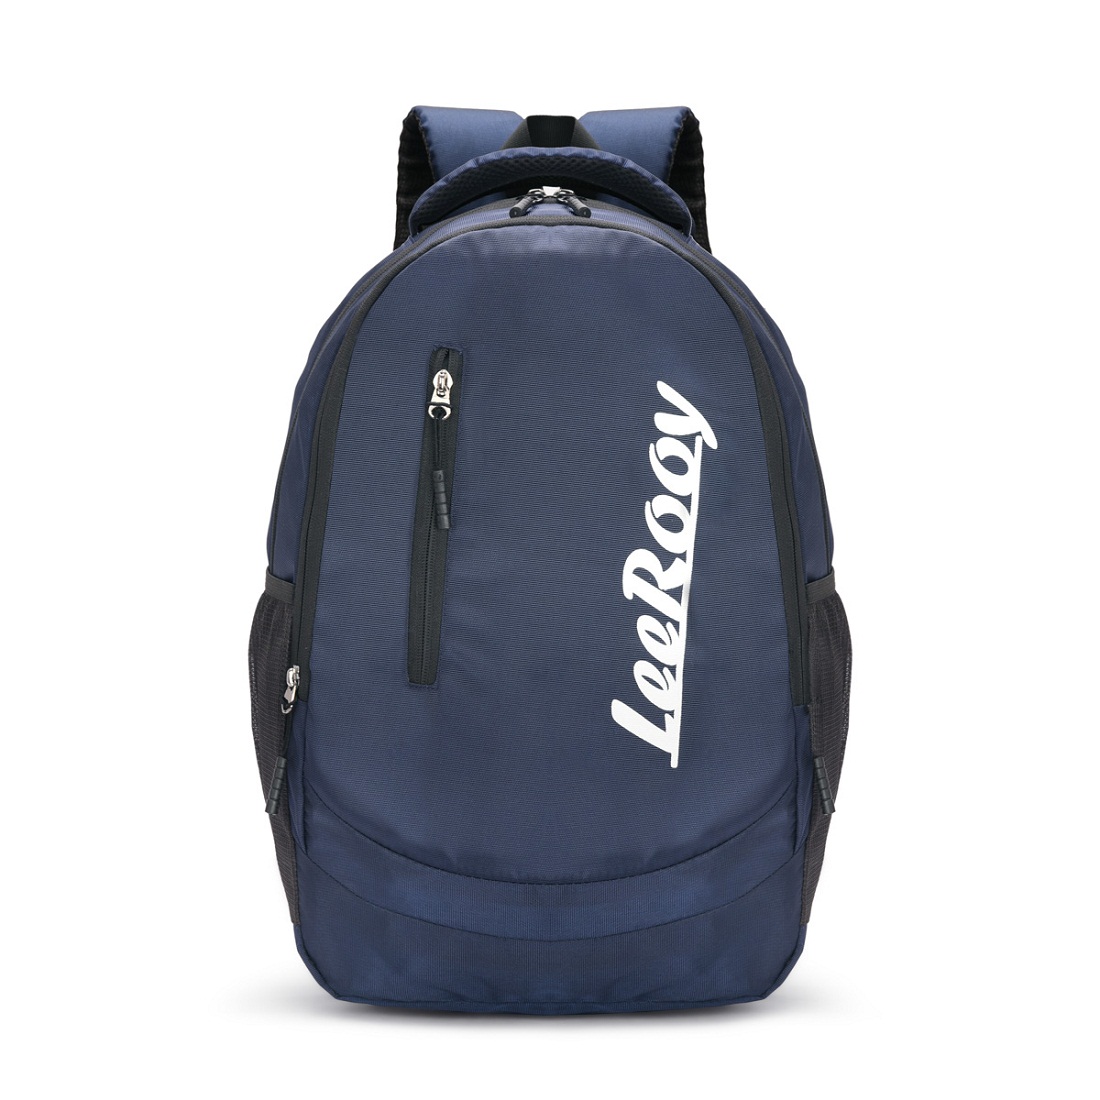 LeeRooy BAG15BLUE Waterproof Backpack  Blue, 25 L 